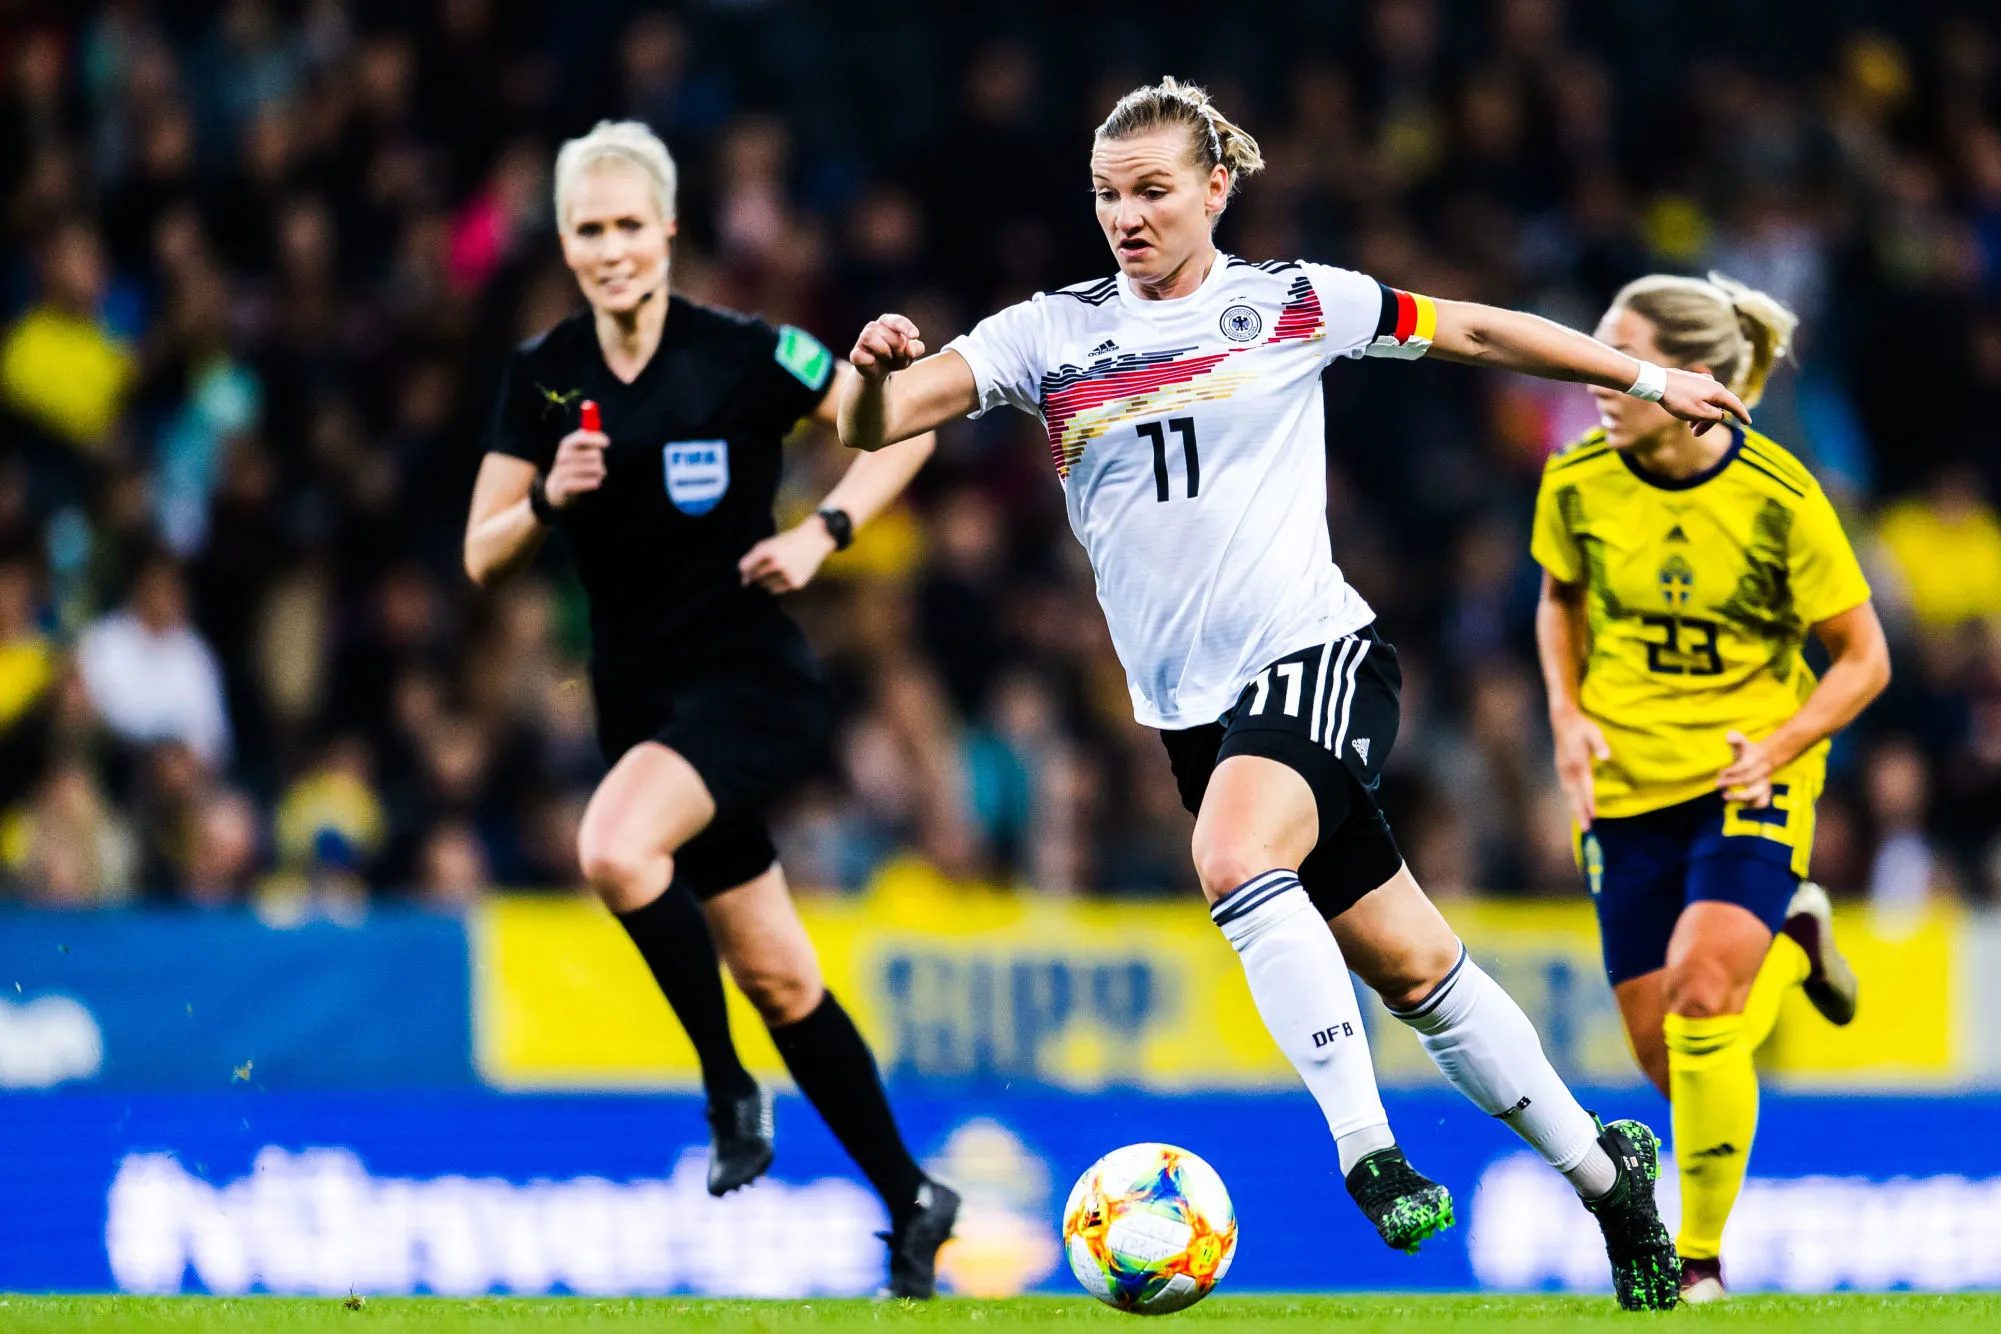 Pronostic Afrique du Sud Allemagne : Analyse, prono et cotes du match de la Coupe du monde féminine 2019